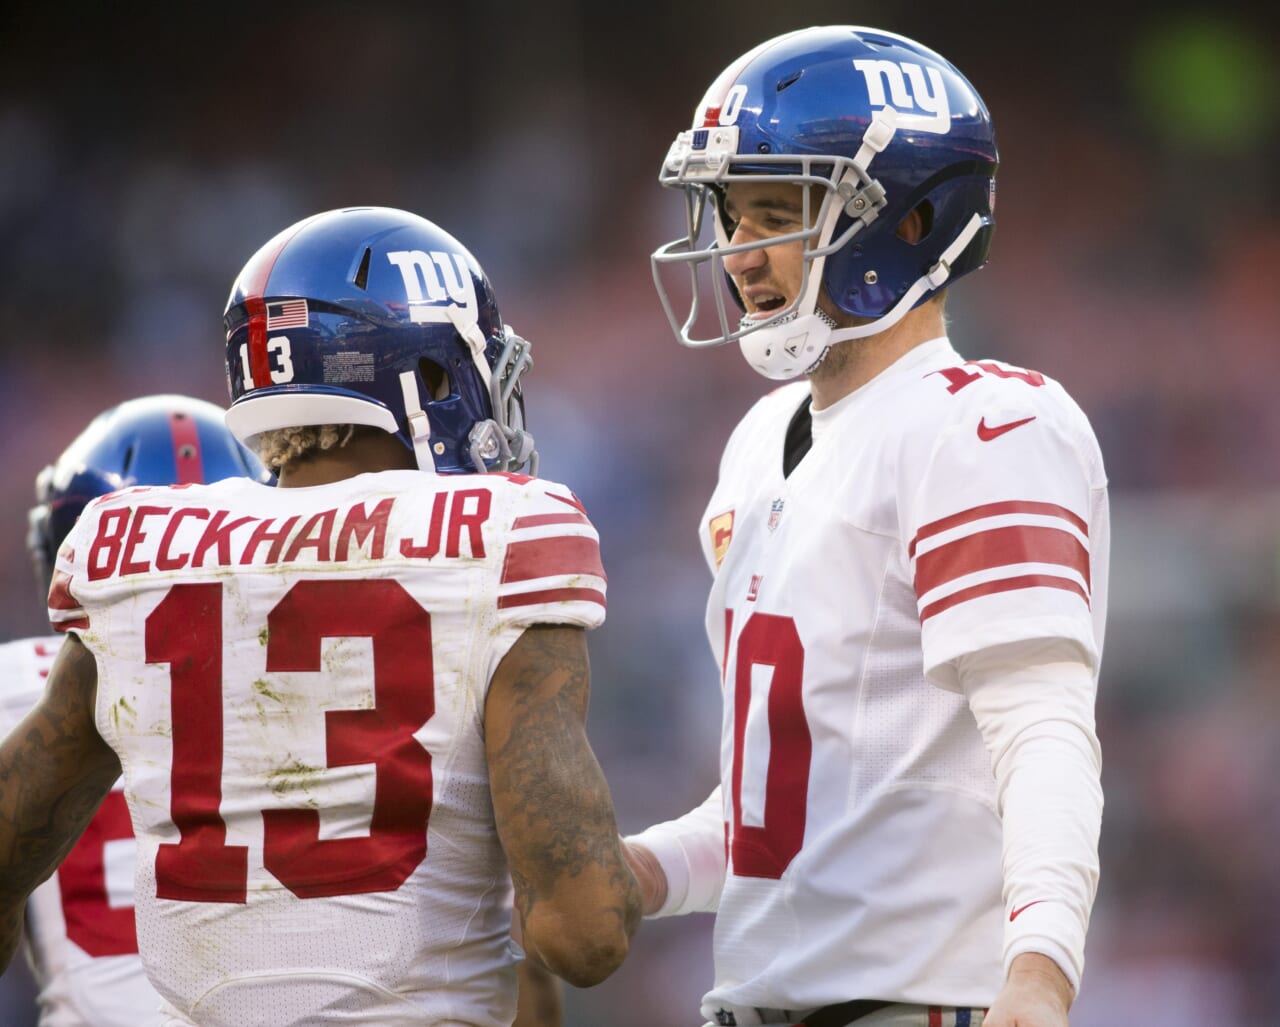 Eli Manning On The Return Of Giants’ Odell Beckham Jr. – 2018 Expectations